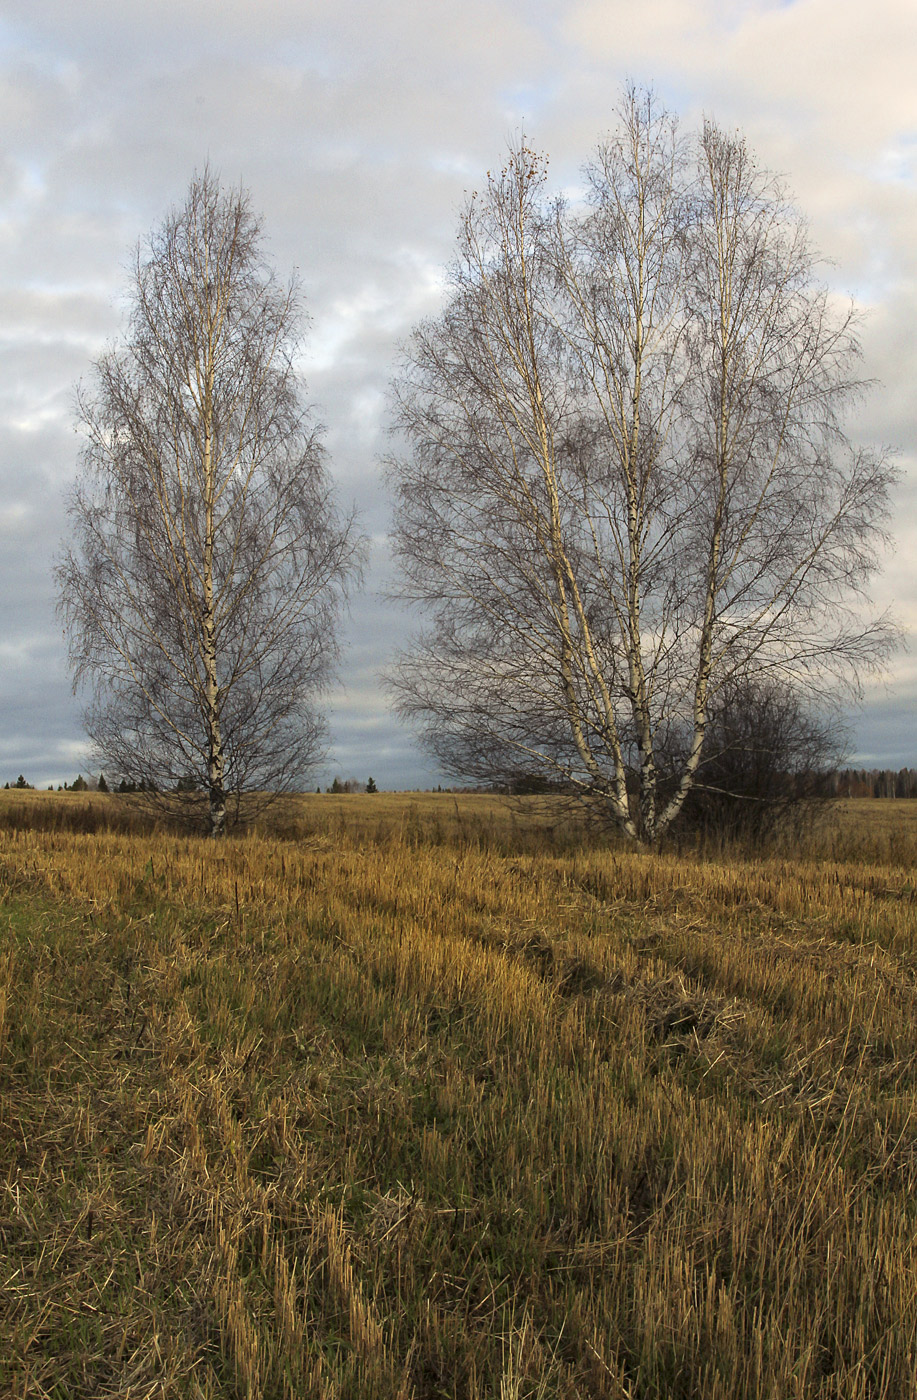 Григорьевское, image of landscape/habitat.